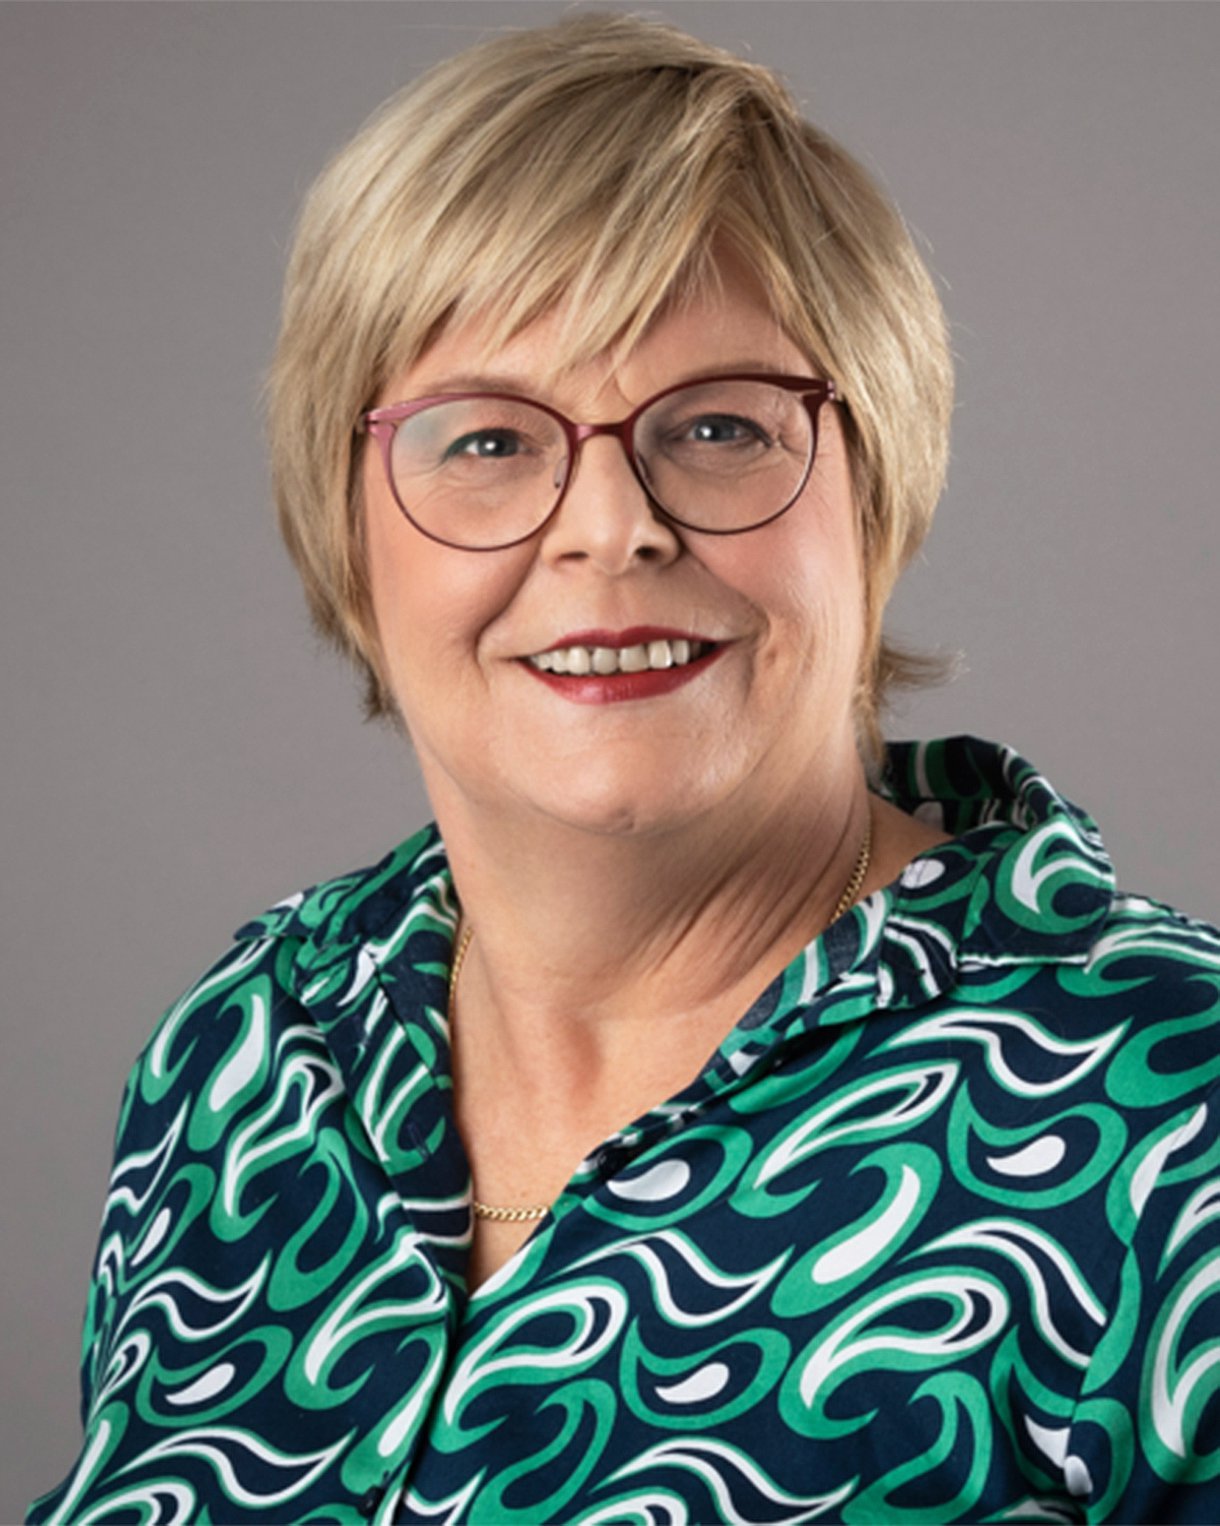 Porträt von Susanne Wiedemeyer, alternier­ende Vorsitzende des Verwaltungs­rates der AOK Sachsen-Anhalt.